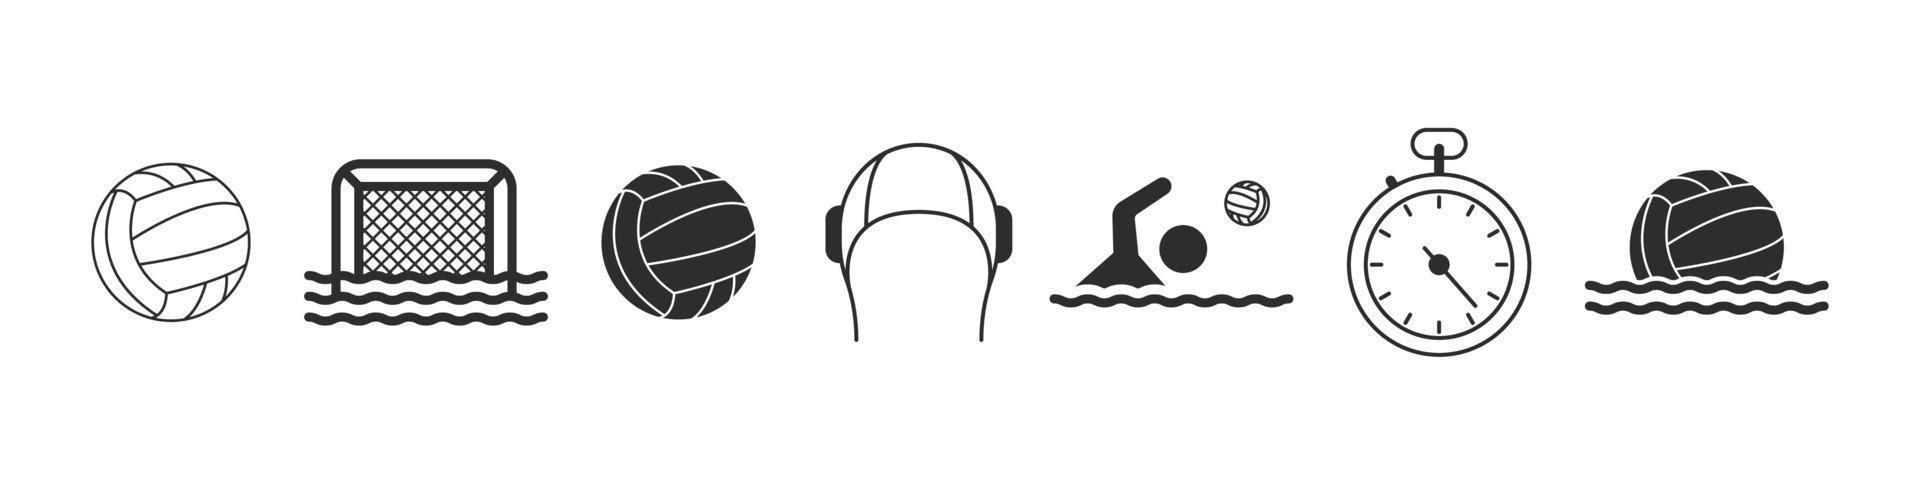 icônes de water-polo. icônes sportives dans un style simple. éléments de water-polo pour la conception. icônes vectorielles vecteur